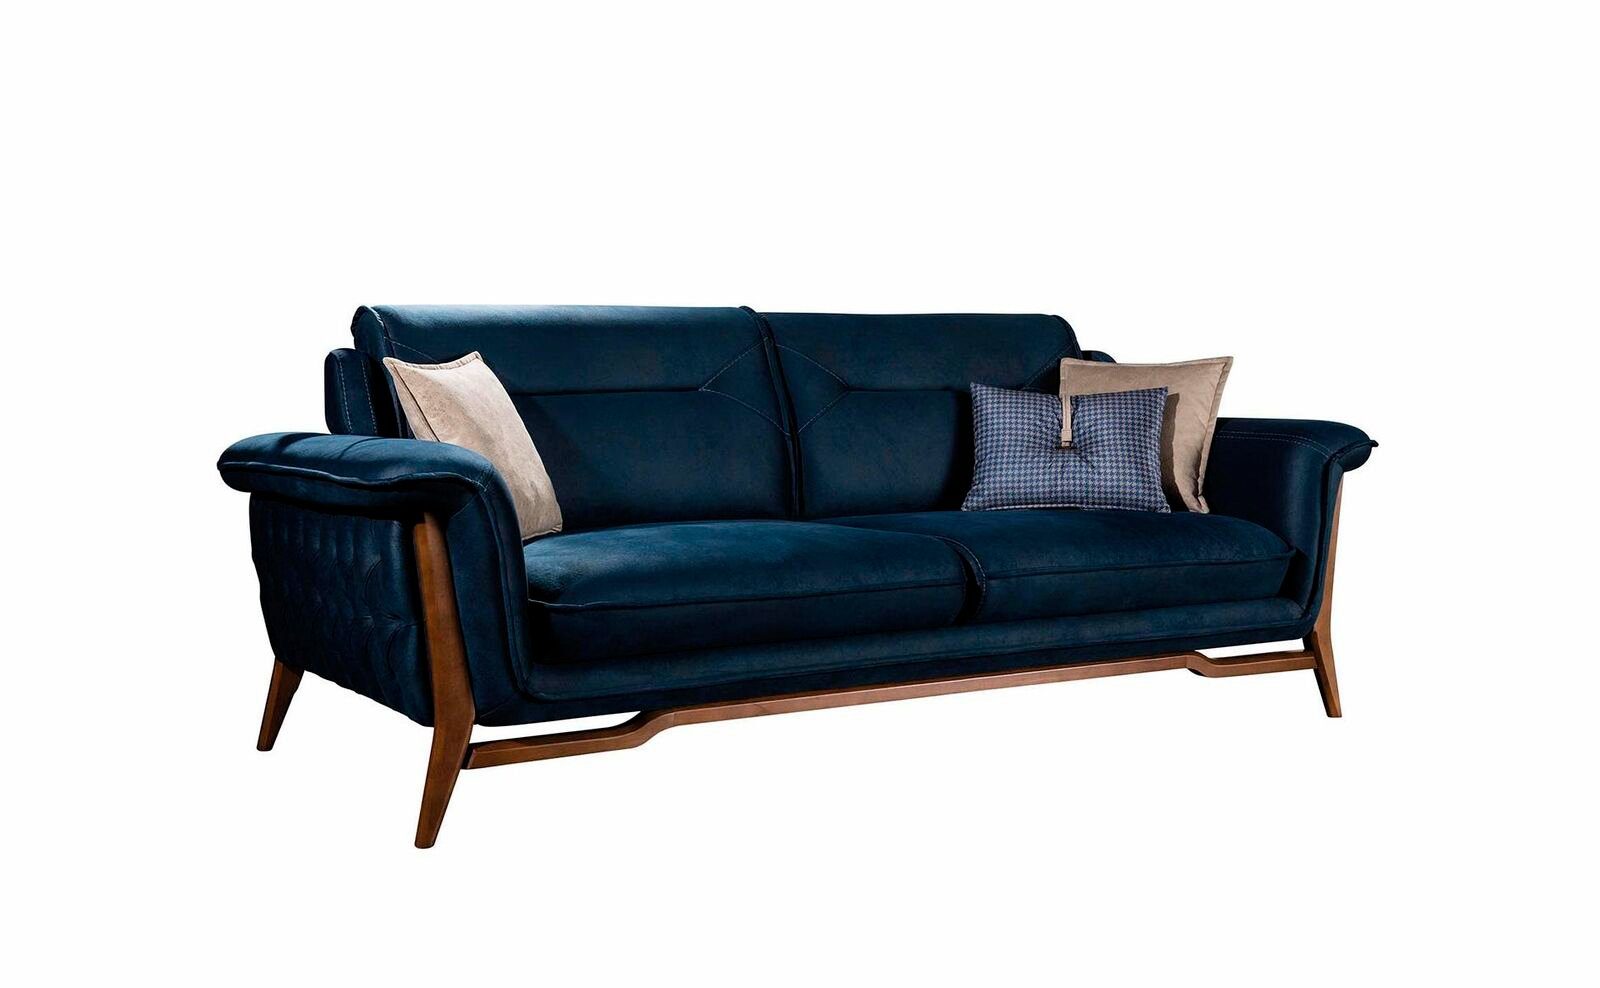 Blaues Stil, Textil Sofa Made Sofa Sitzer 1 Teile, Edler Wohnzimmercouch Dreisitzer Europe Luxus JVmoebel in